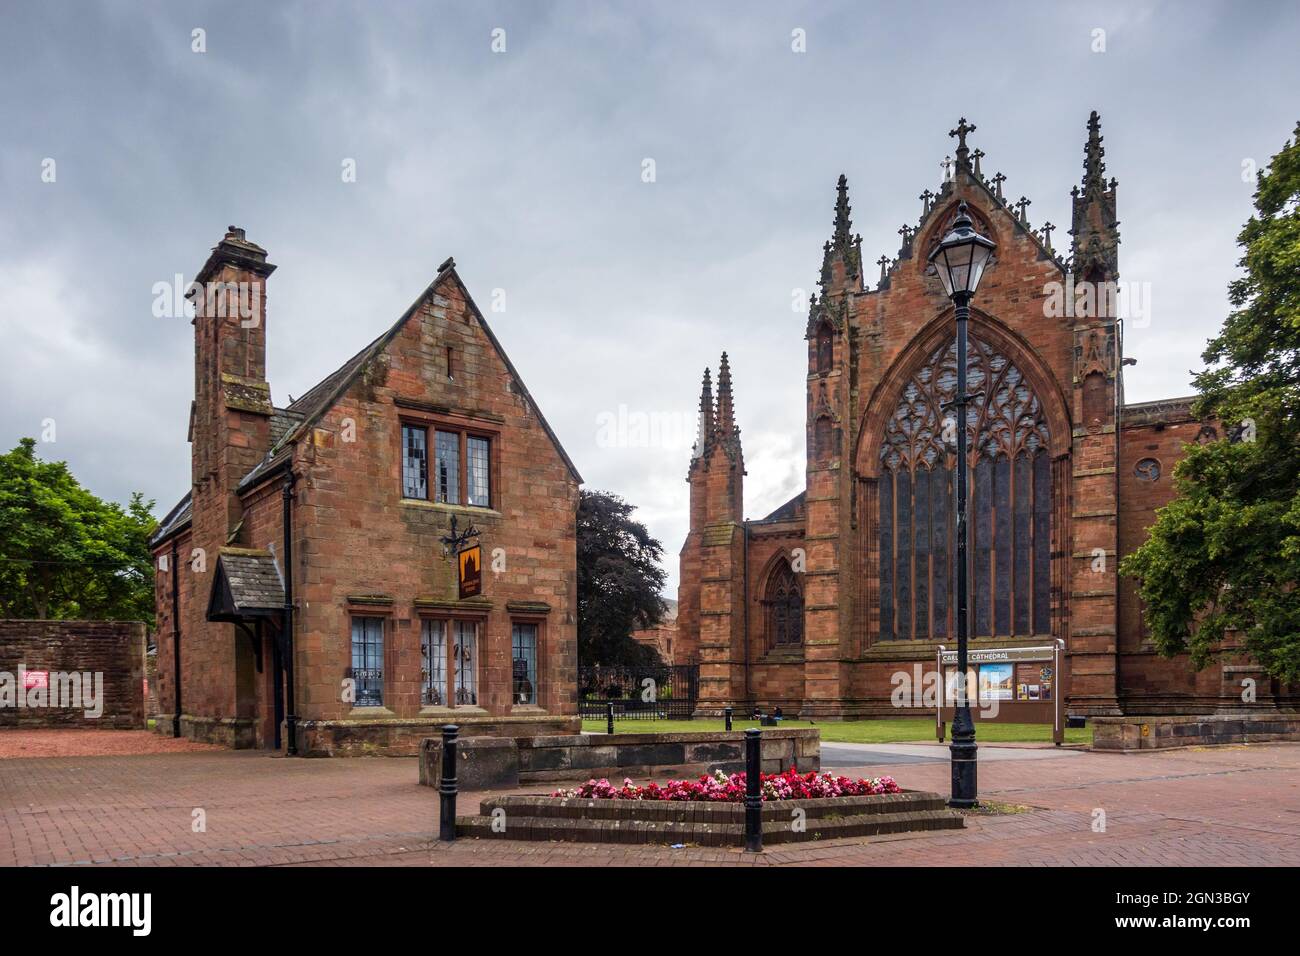 Kathedrale von Carlisle (die Kathedrale der Heiligen und ungeteilten Dreifaltigkeit) mit Cathedral Lodge Antiques auf der linken Seite. Cumbria, England, Großbritannien Stockfoto